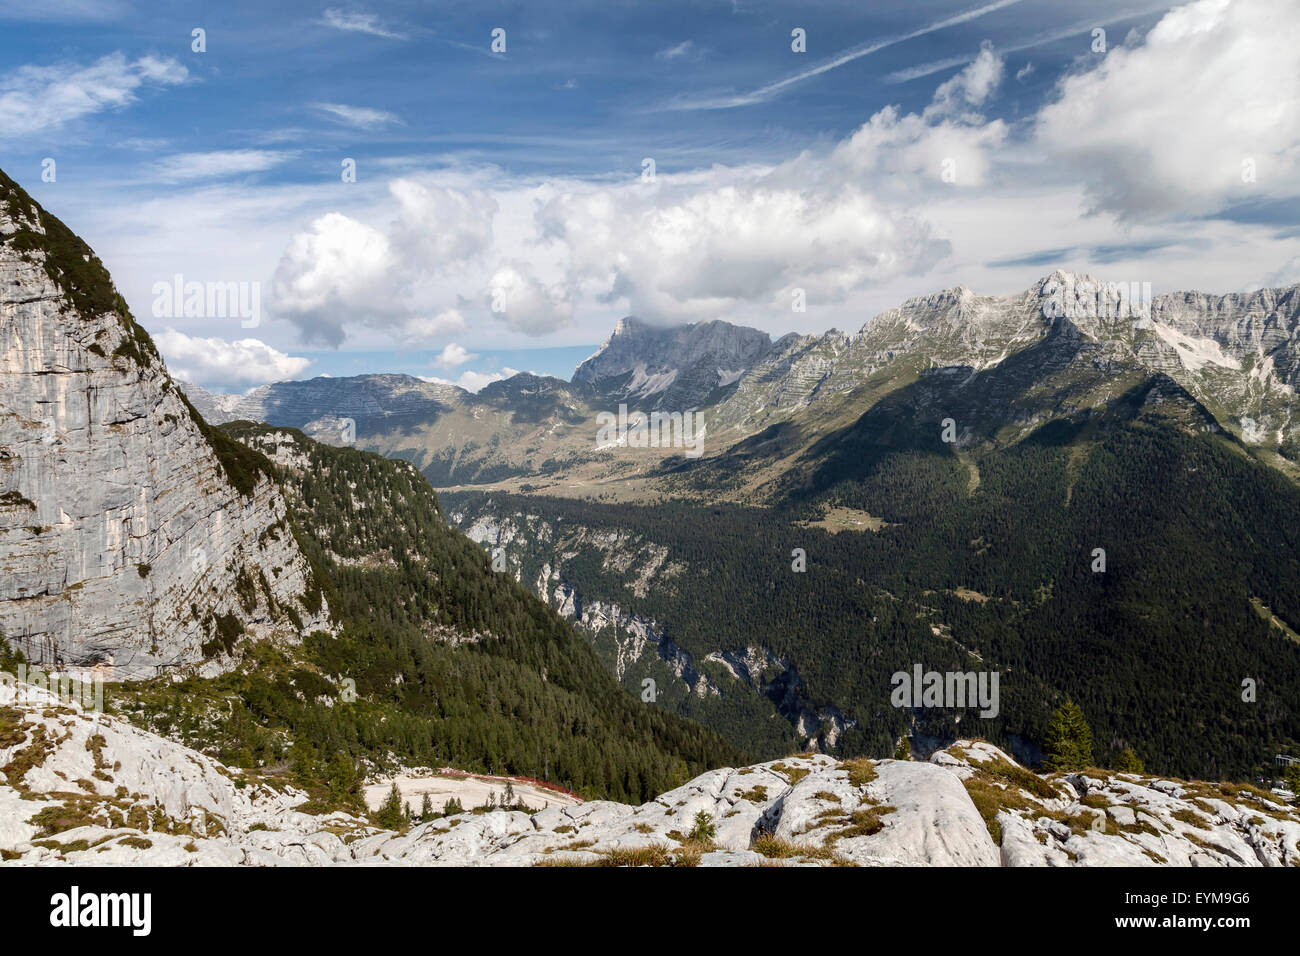 Auf der Kanin-Gruppe, Italien, Julische Alpen III Stock Photo